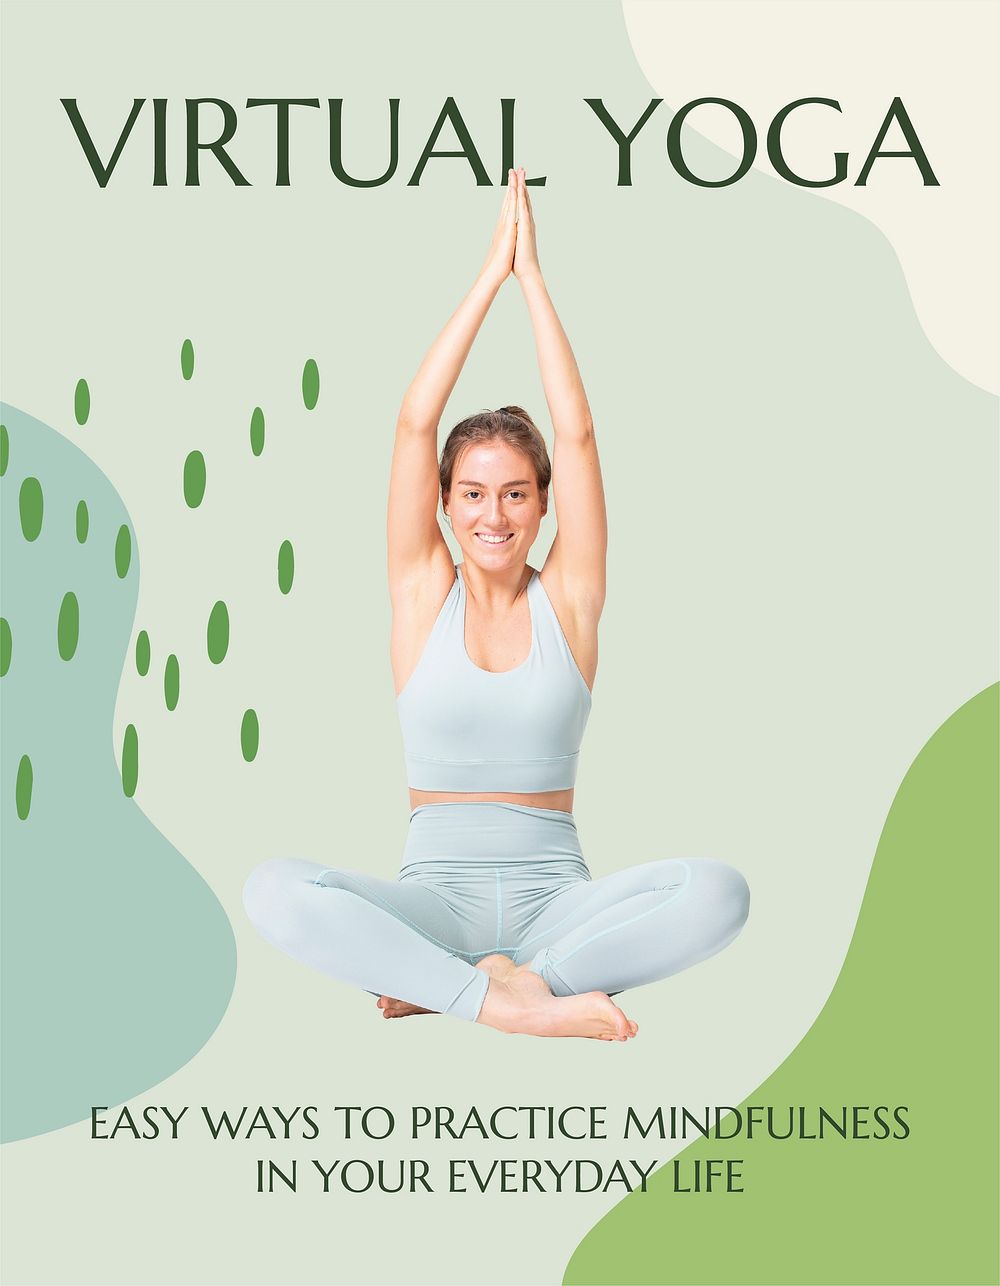 Virtual yoga class flyer template, editable design  vector